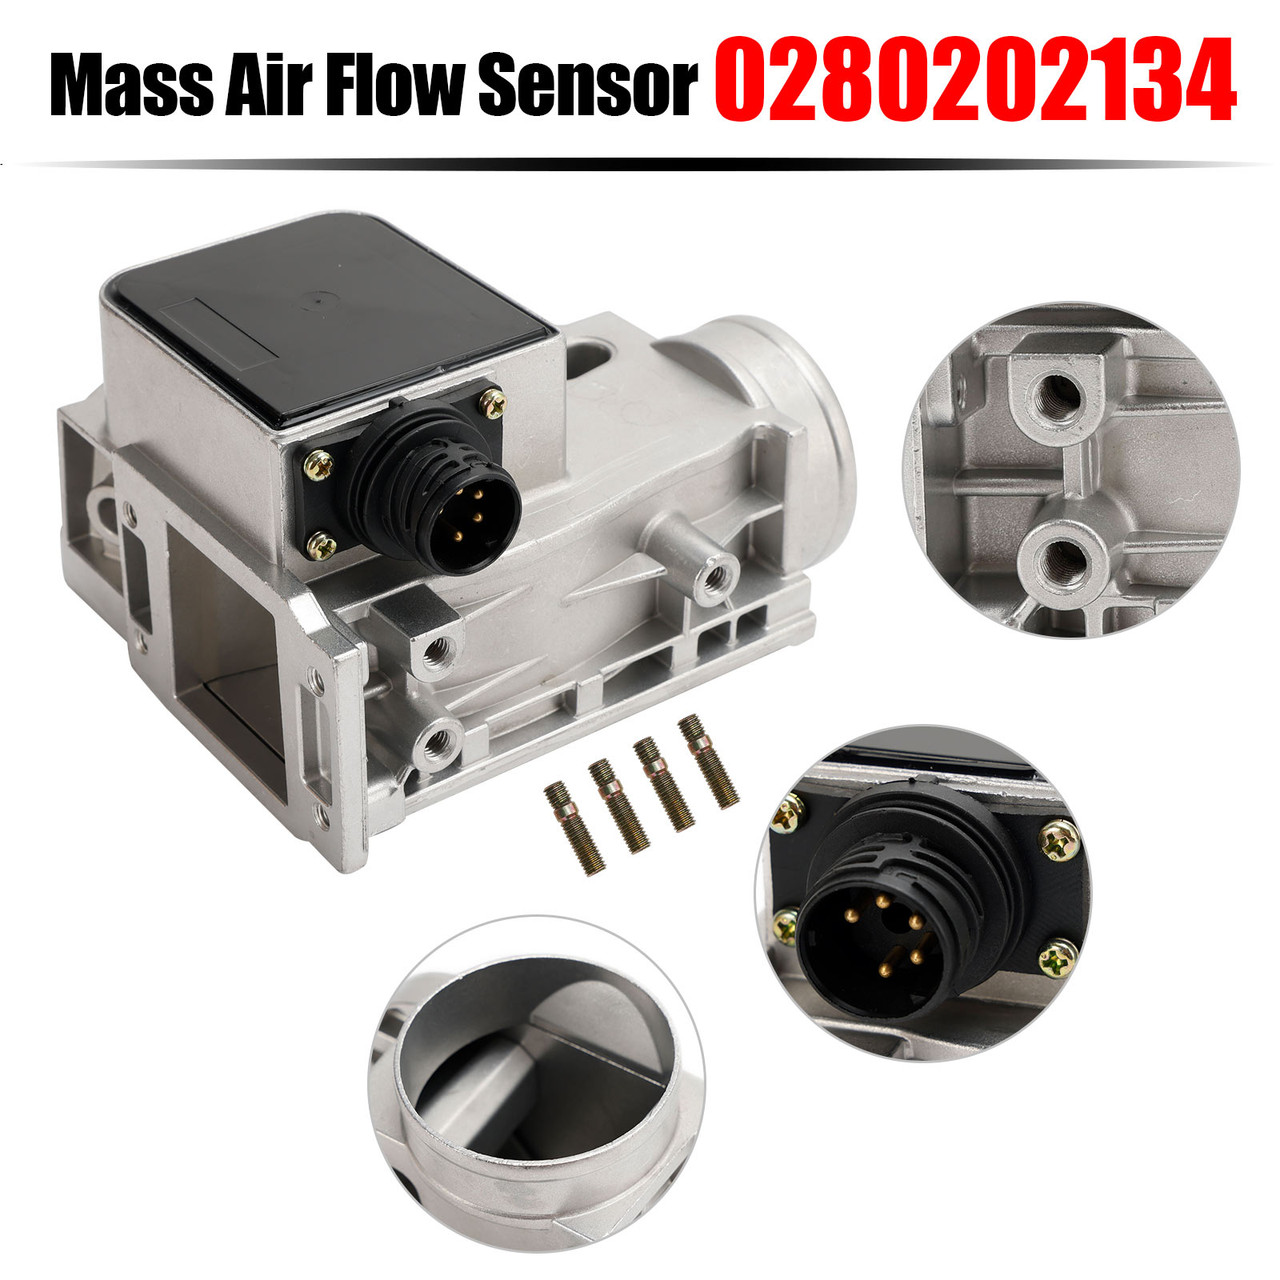 MAF Mass Air Flow Sensor 0280202134 Fit for BMW 318Ti 318i 318is 1.8L 1991-1995